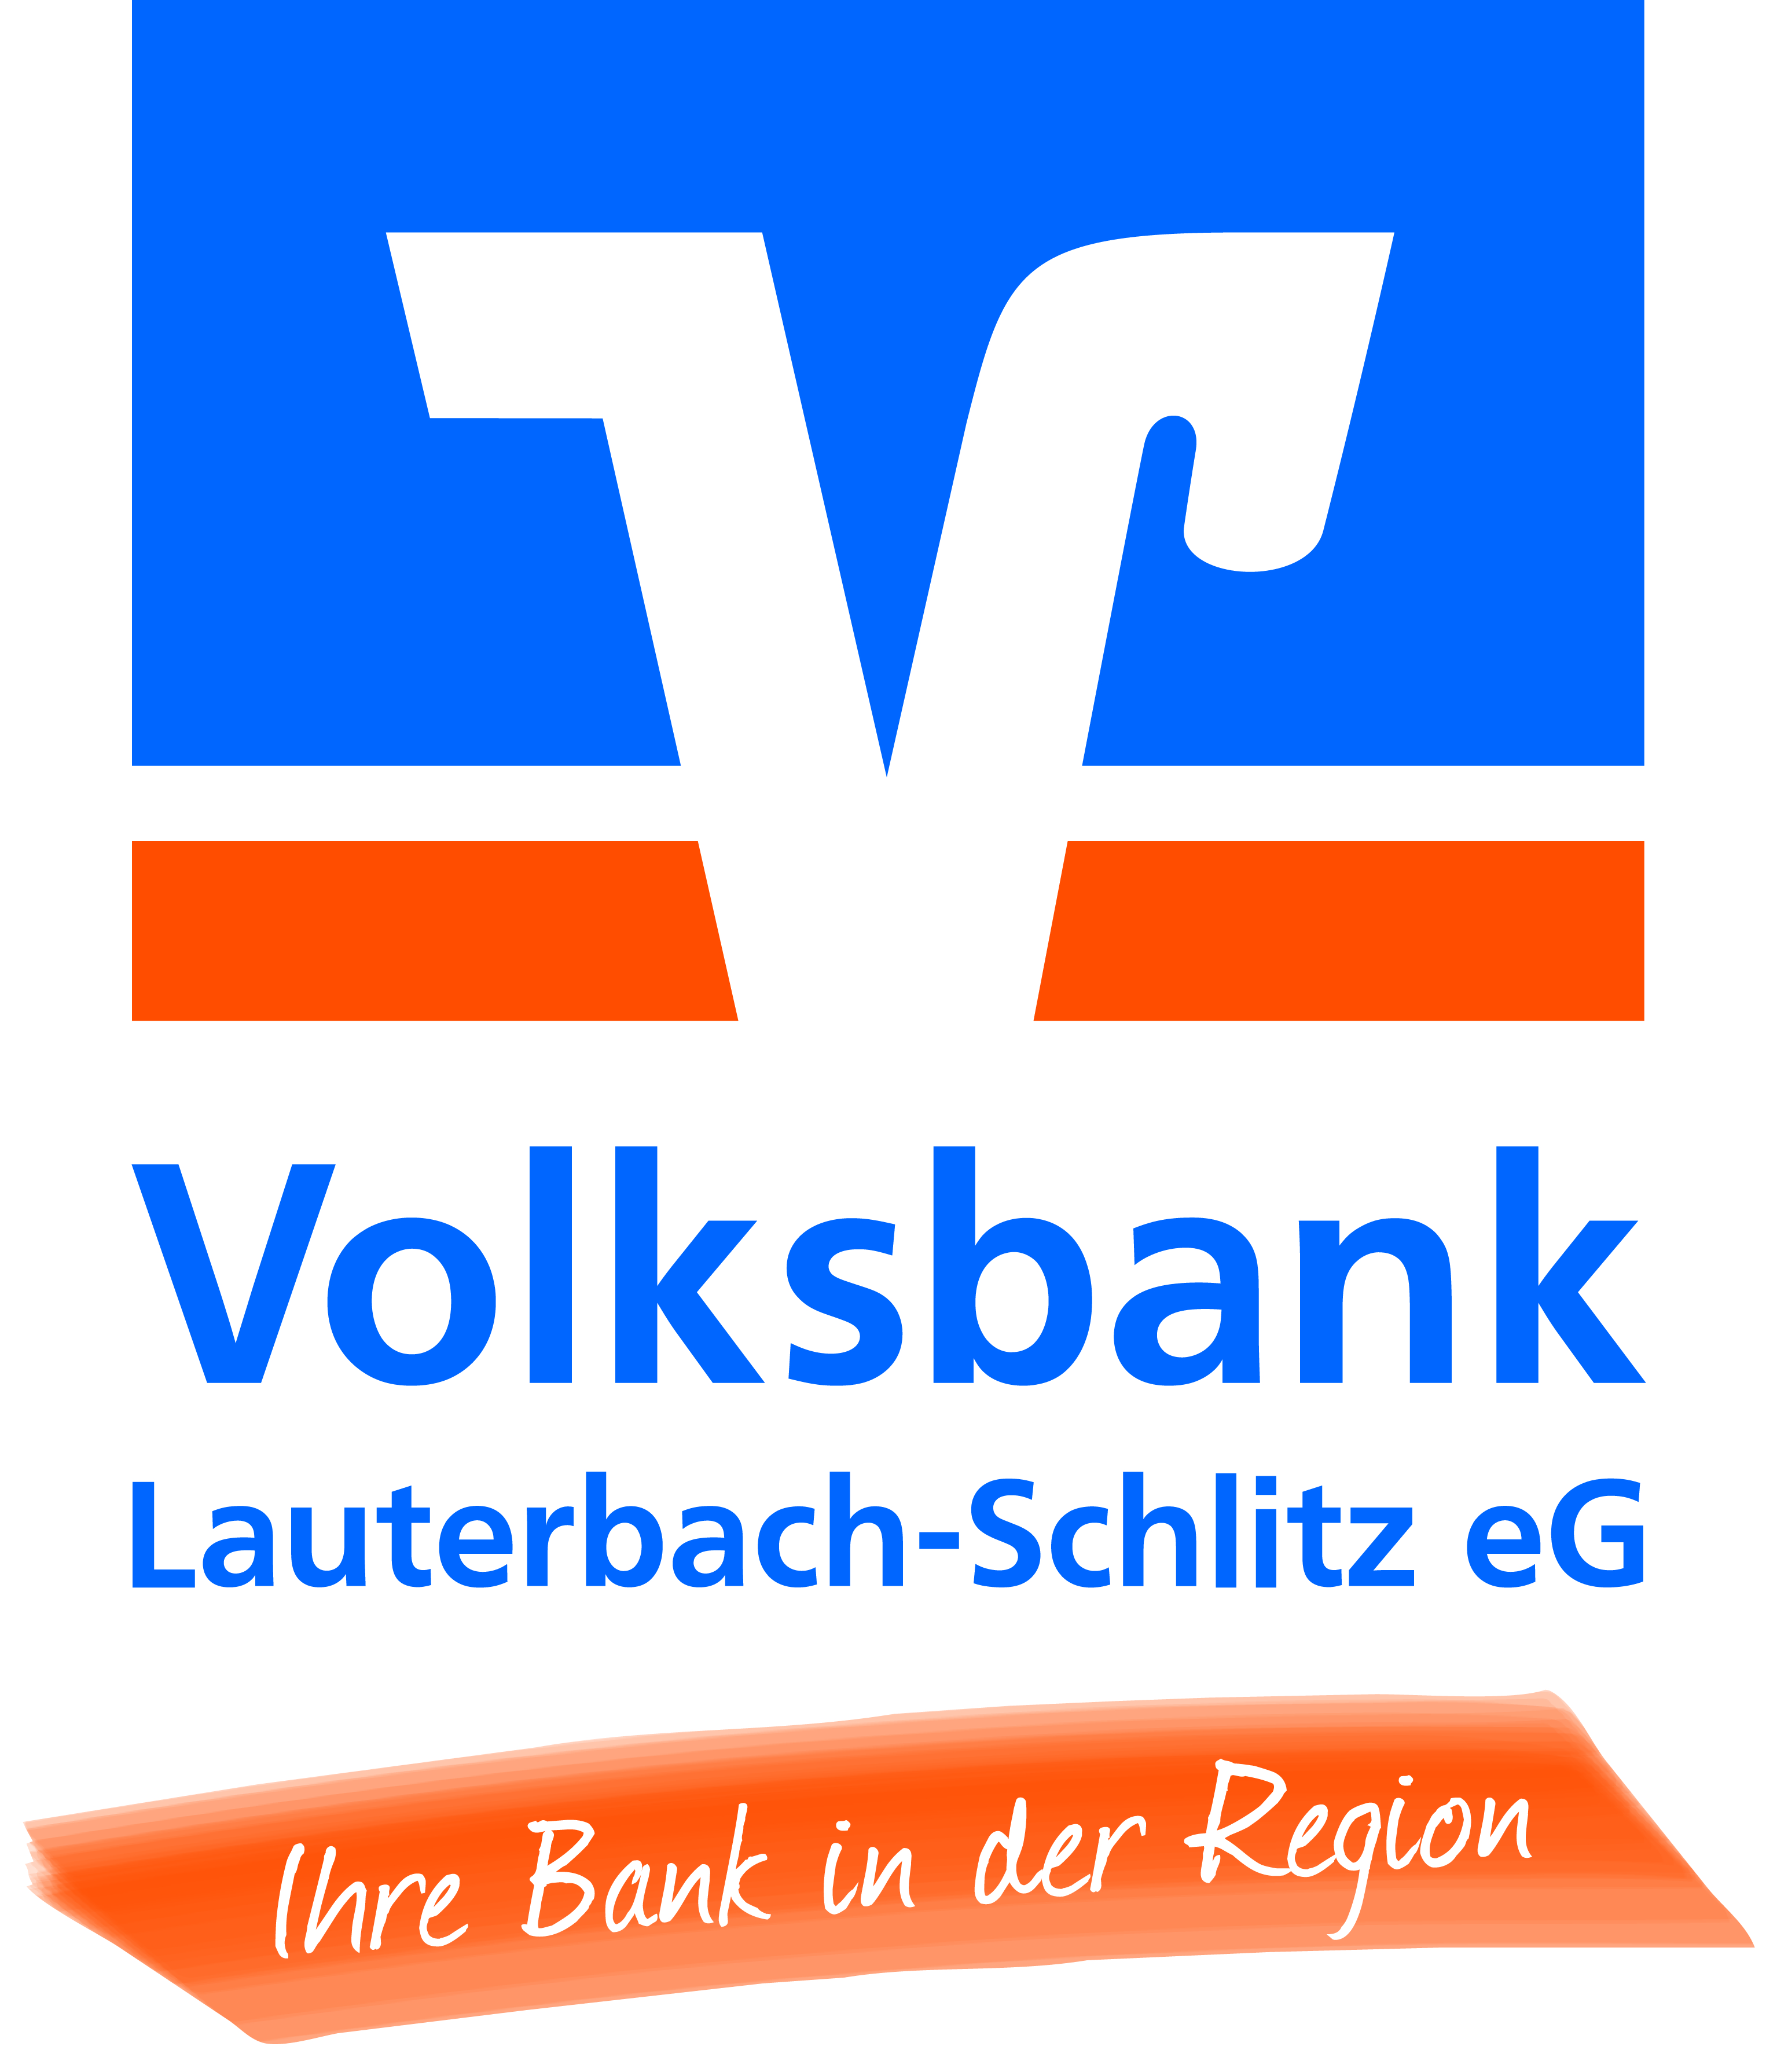 Volksbank Lauterbach-Schlitz